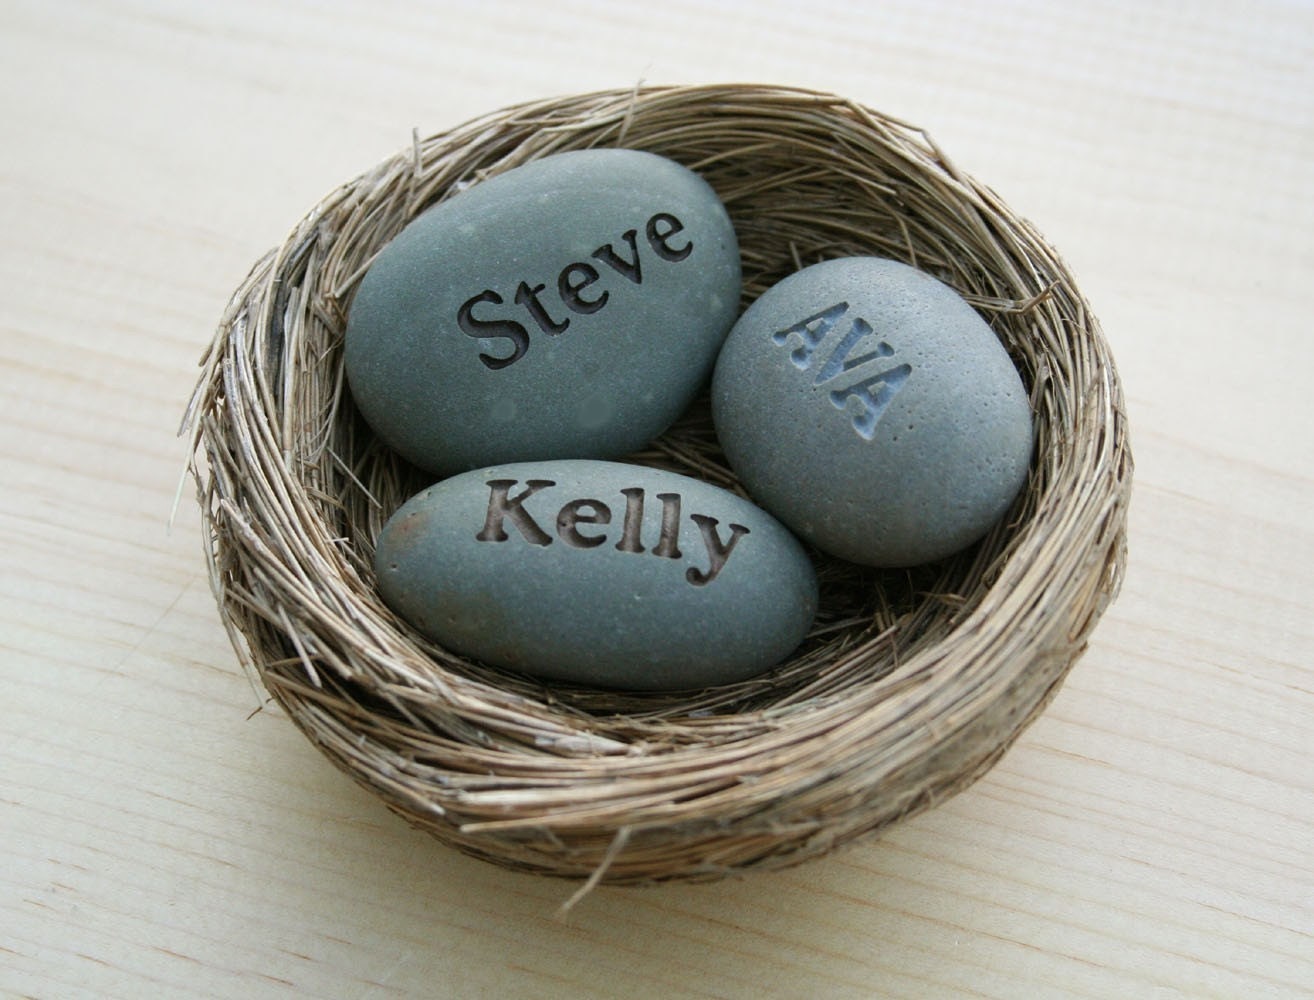 Mom's Nest (c) - Set of 3 name stones in bird nest